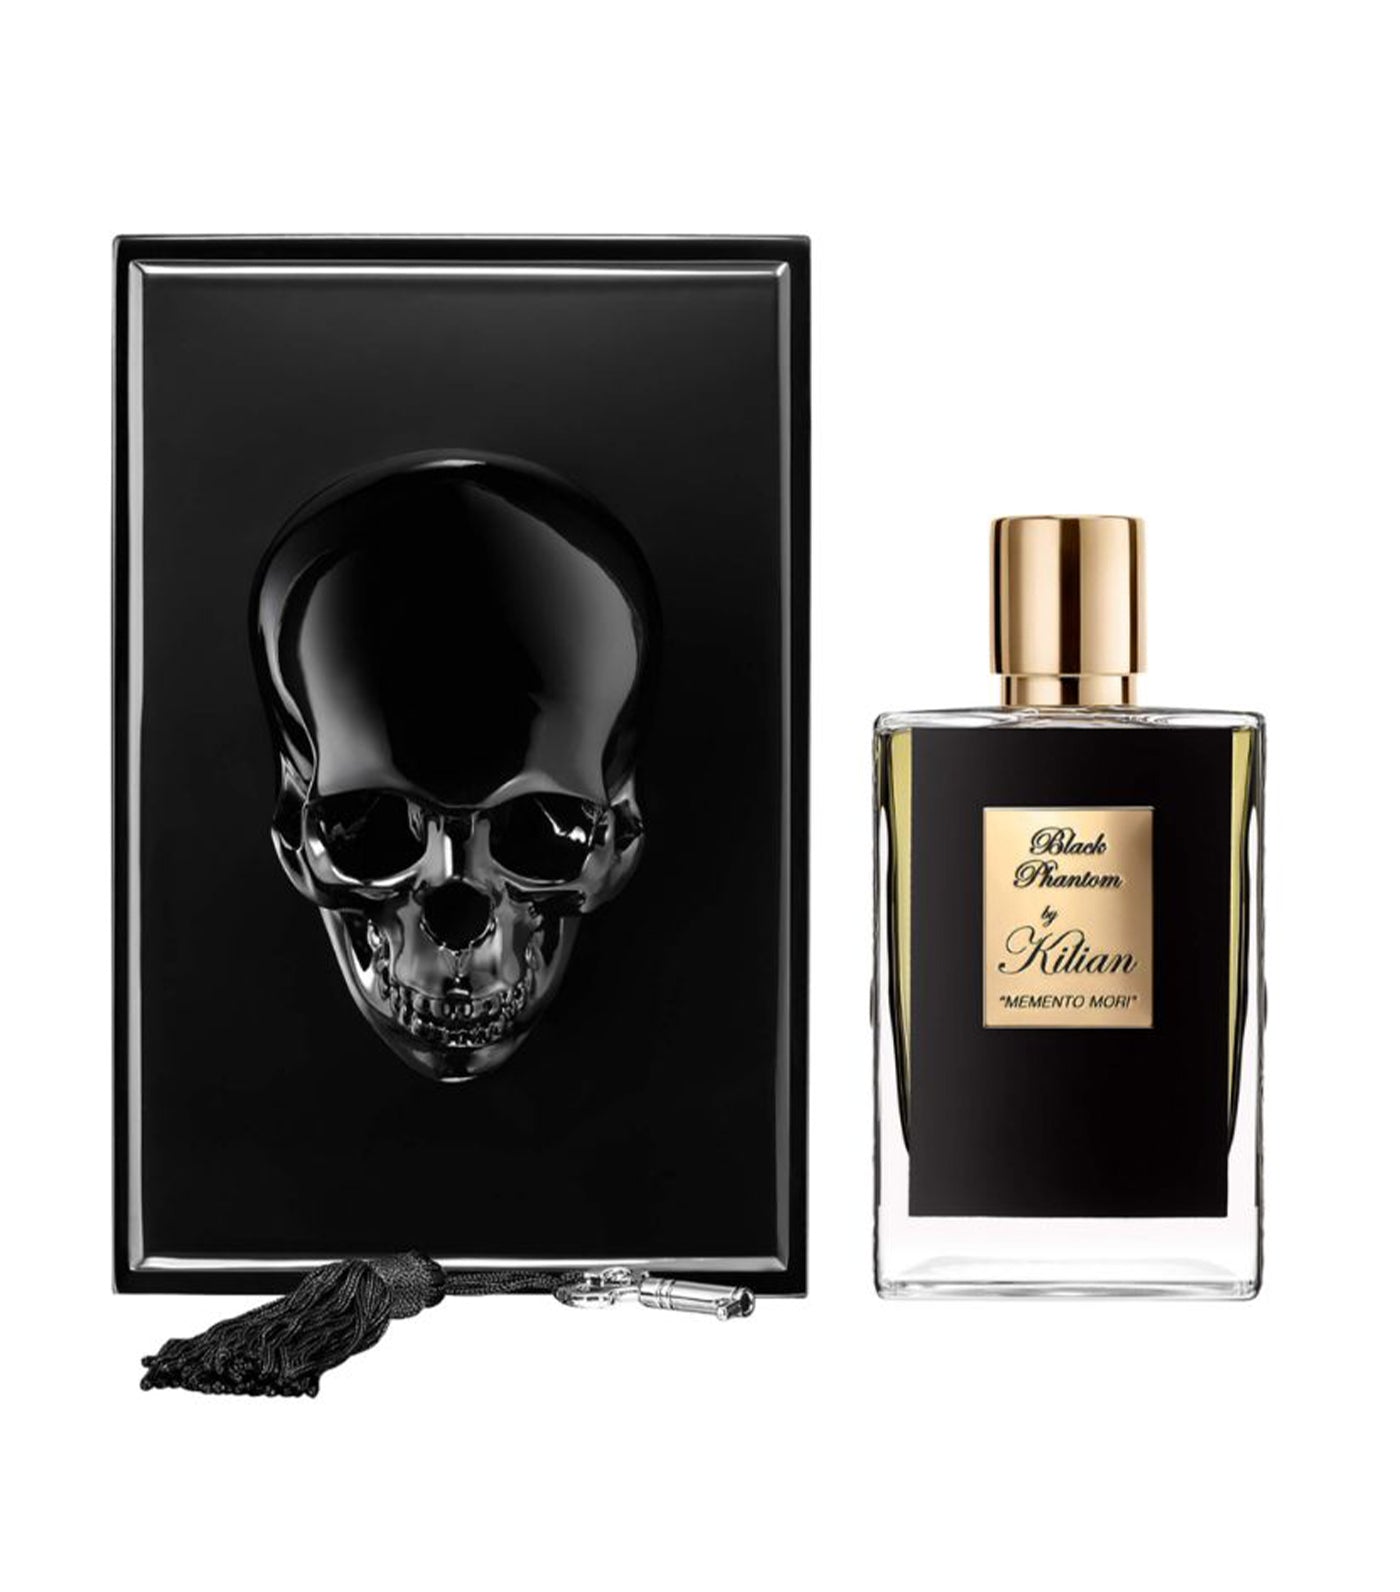 Kilian Paris Black Phantom - "Memento Mori" Eau de Parfum and Clutch